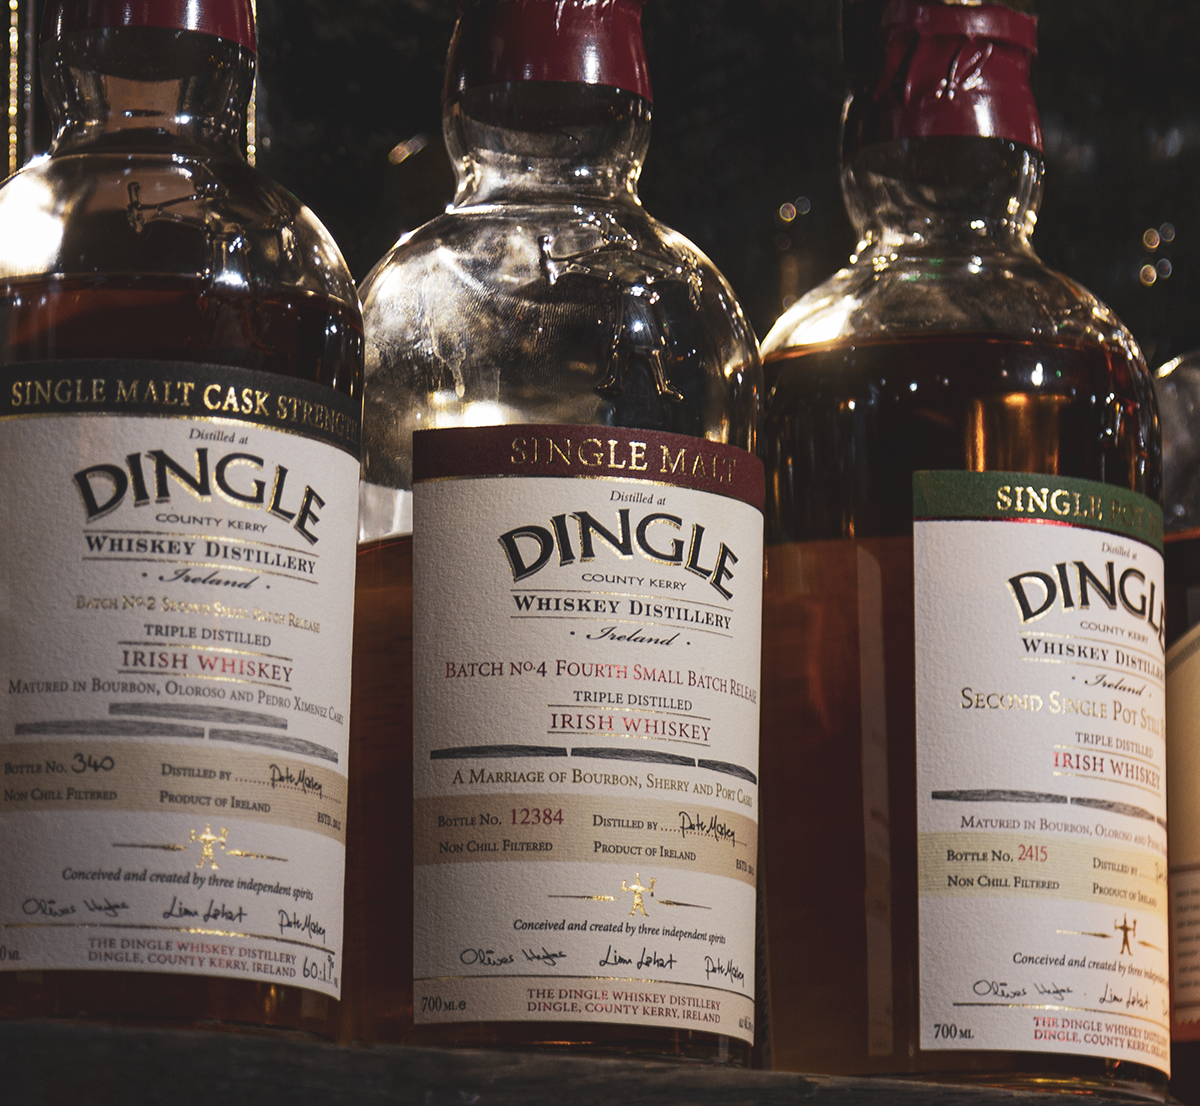 Bottles of Dingle Single Malt Whiskey on a bar shelf. Photo ©2019, Mark Gillespie/CaskStrength Media.